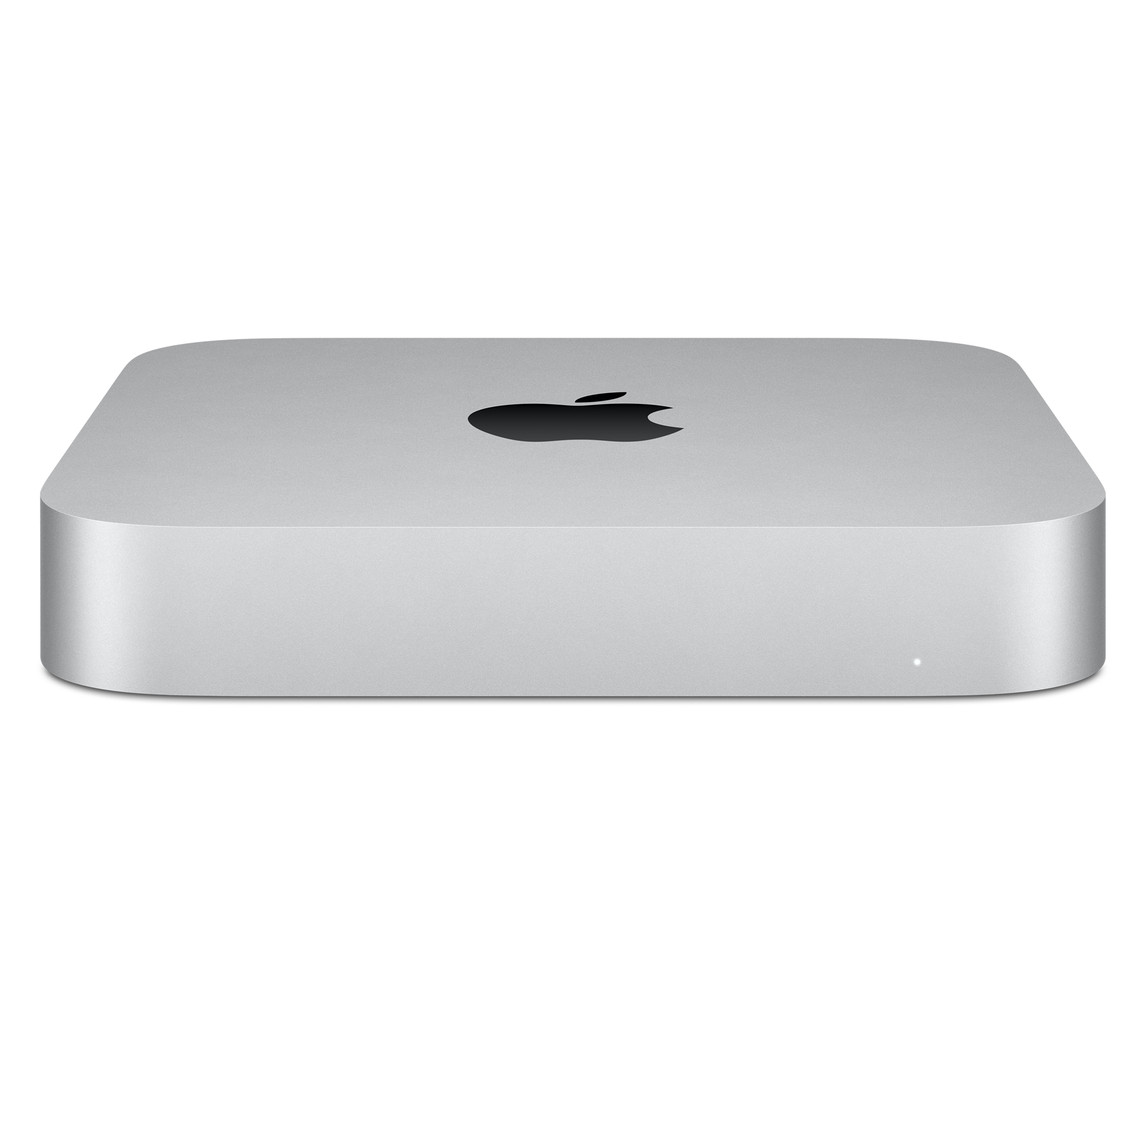 Mac mini showing Apple logo on top.